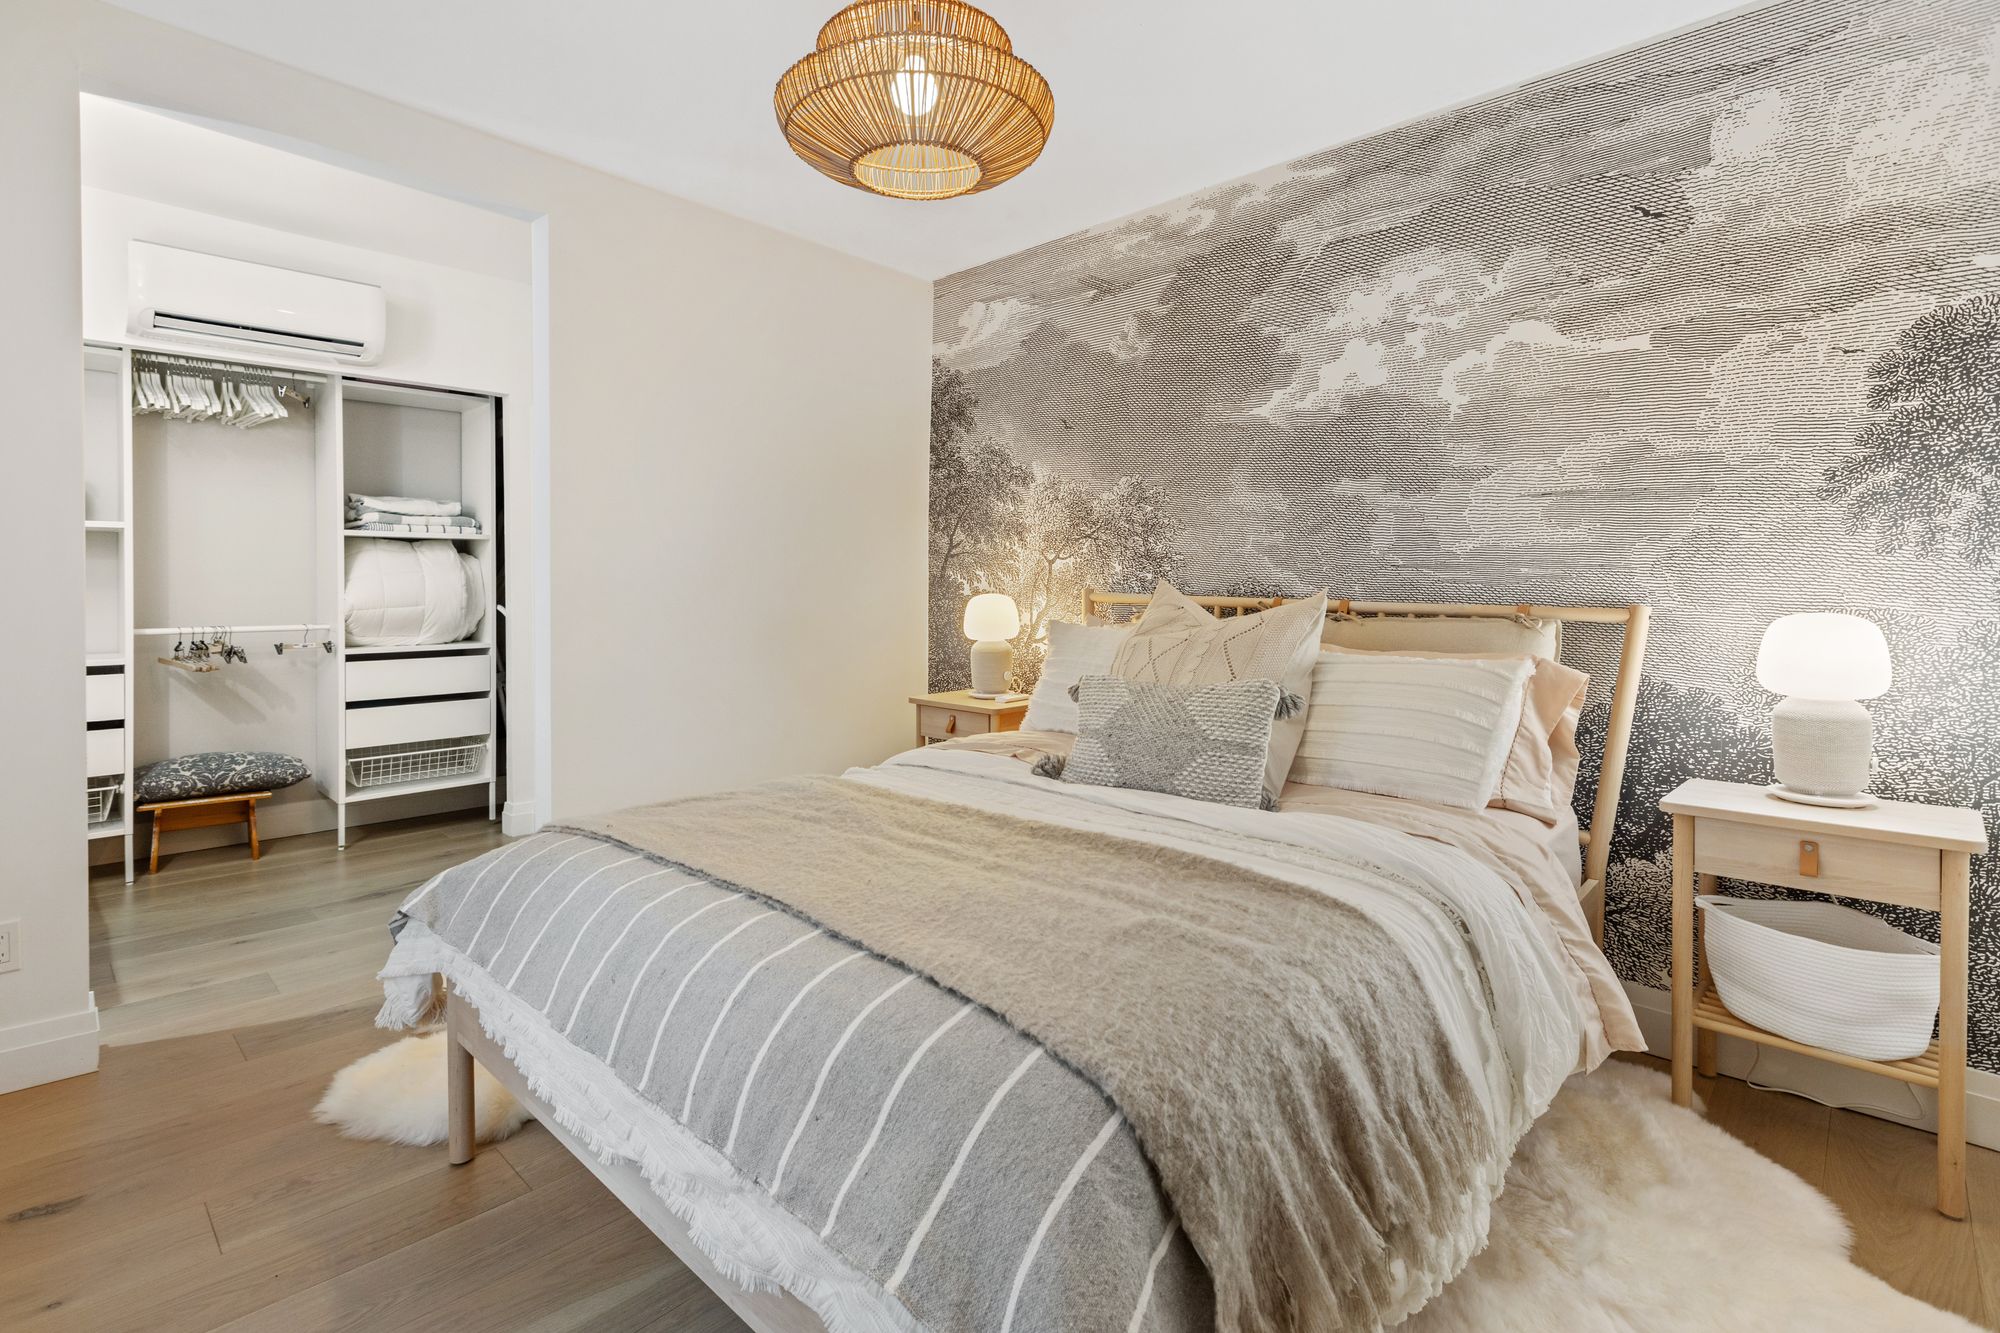 dormitorio relajante bonito con vestidor, tonos neutros, madera y cama cómoda